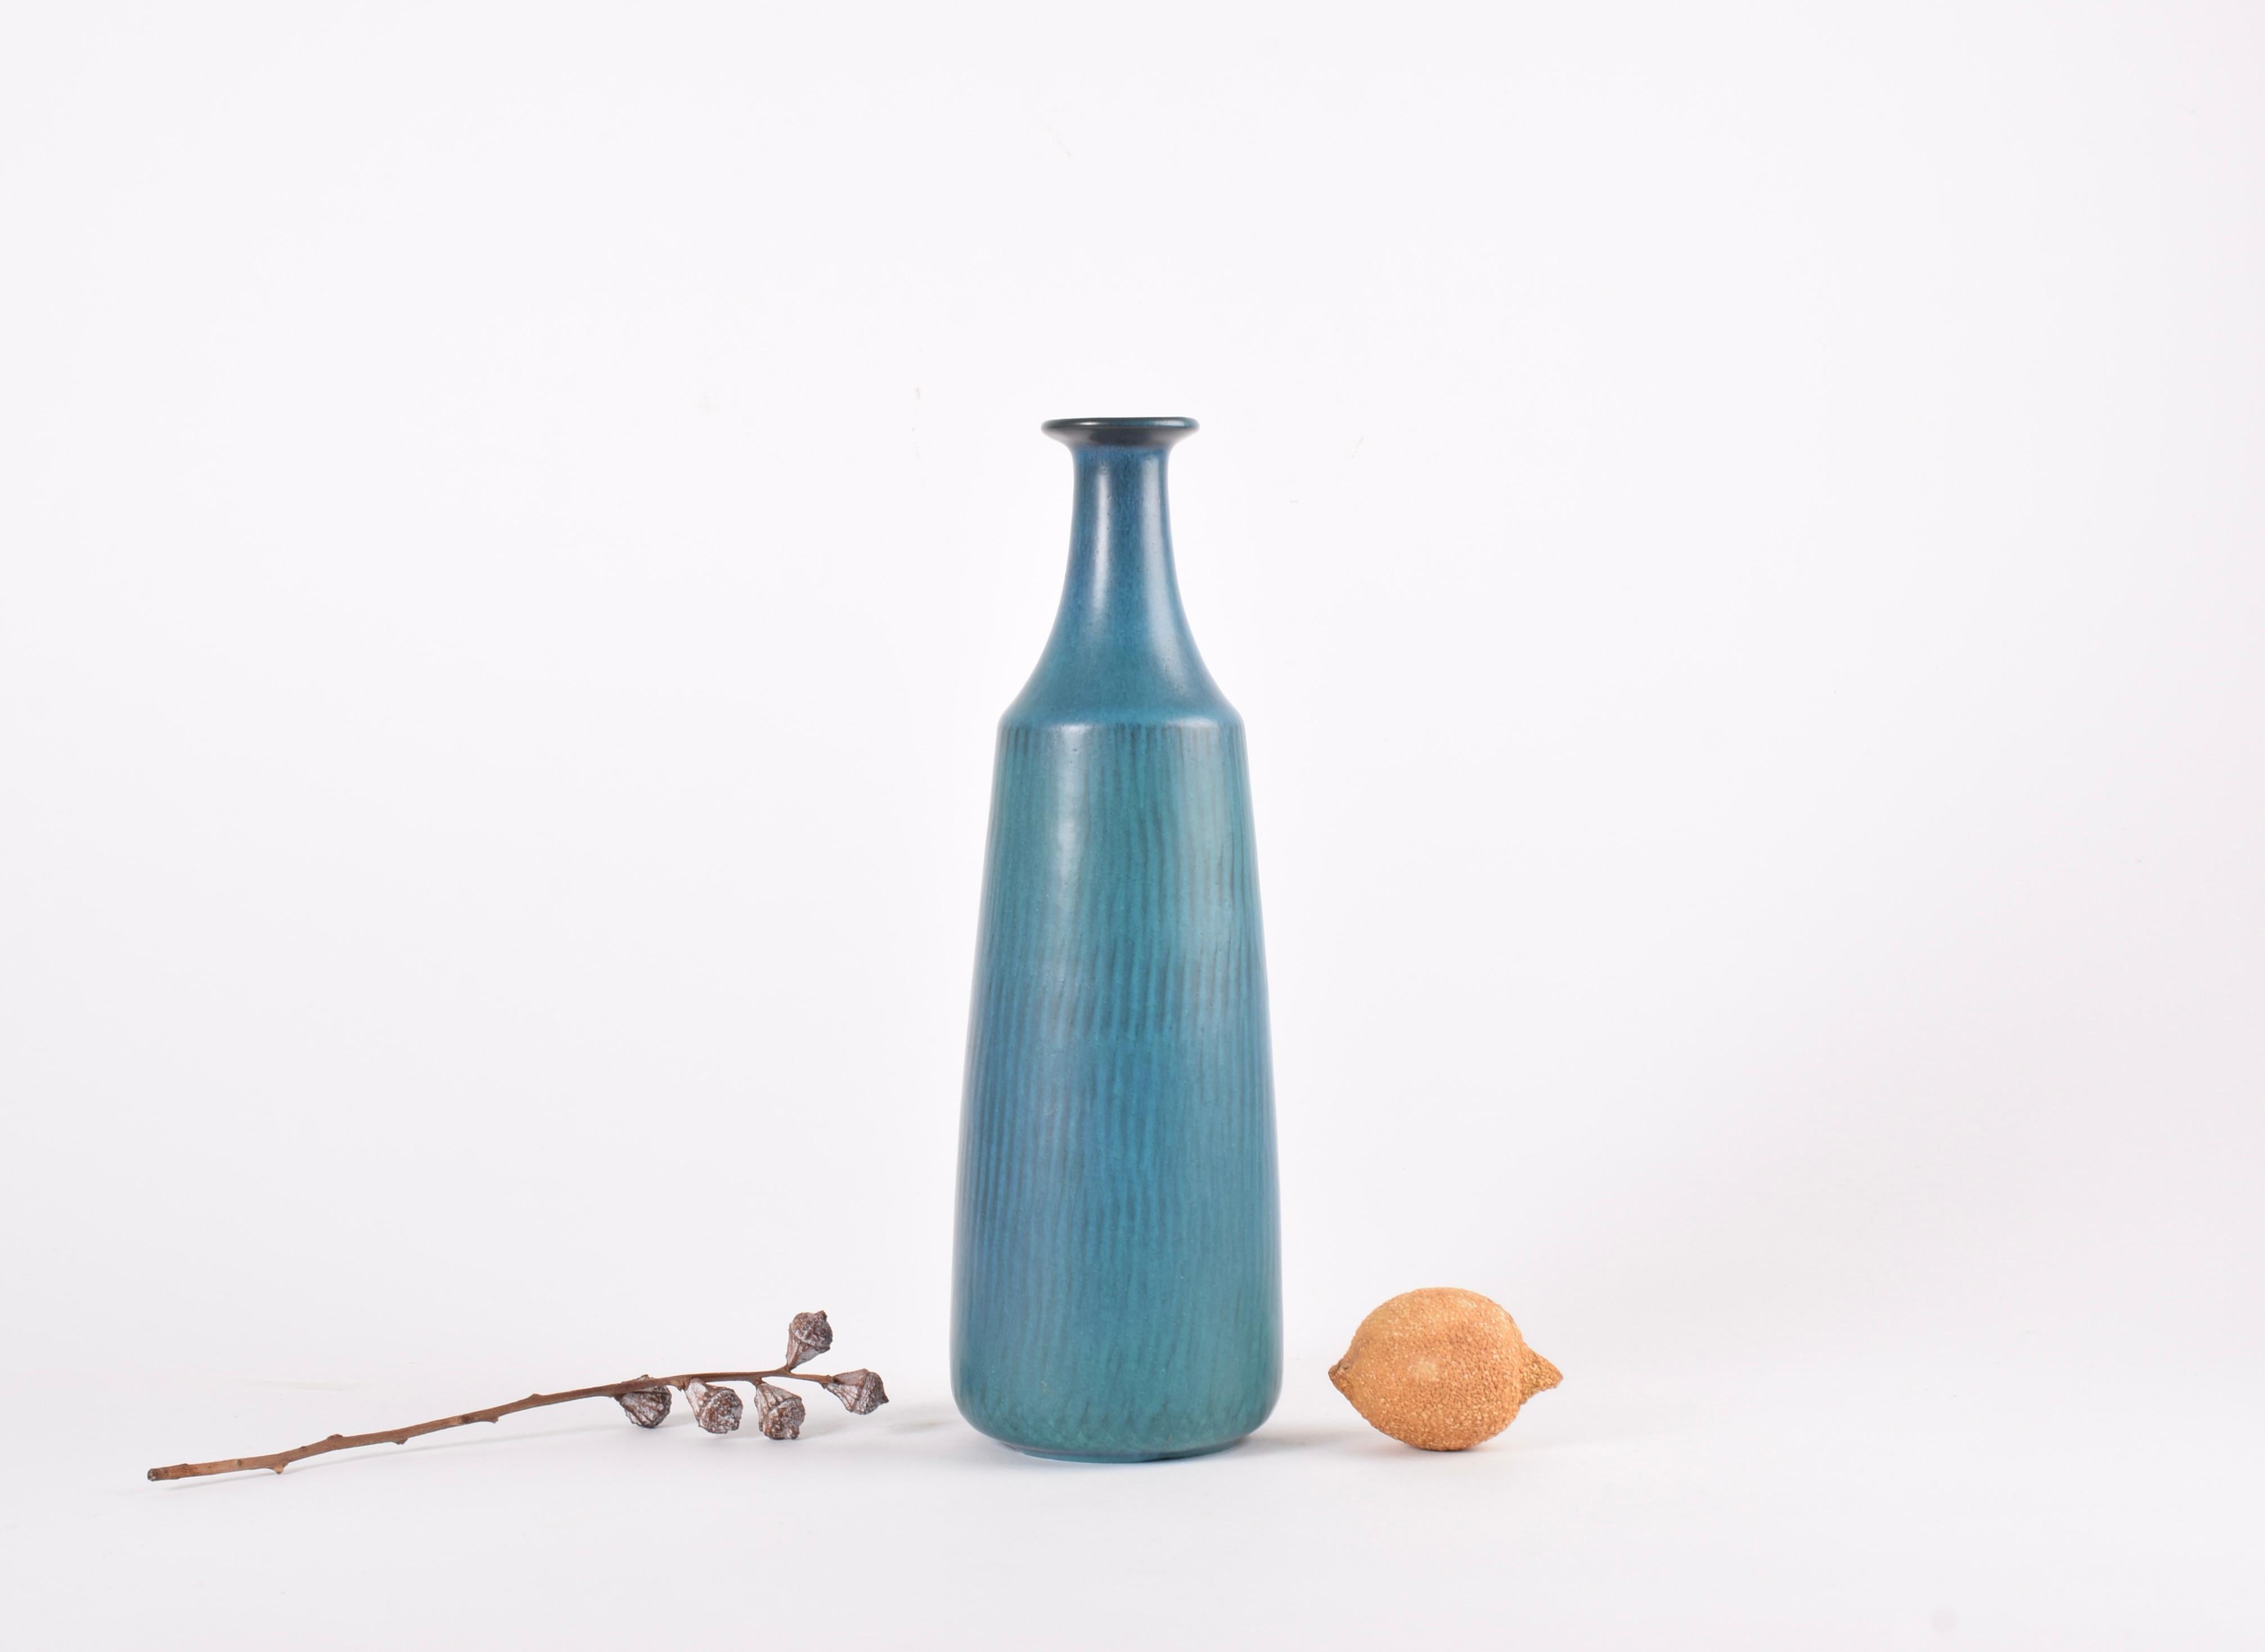 Vase haut et fin conçu par Gunnar Nylund pour Nymølle, Danemark.  Fabriqué vers les années 1960. 

Le vase est recouvert d'une glaçure bleu-vert vive sur un motif rayonnant. 

Hauteur : 30,5 cm (12.01